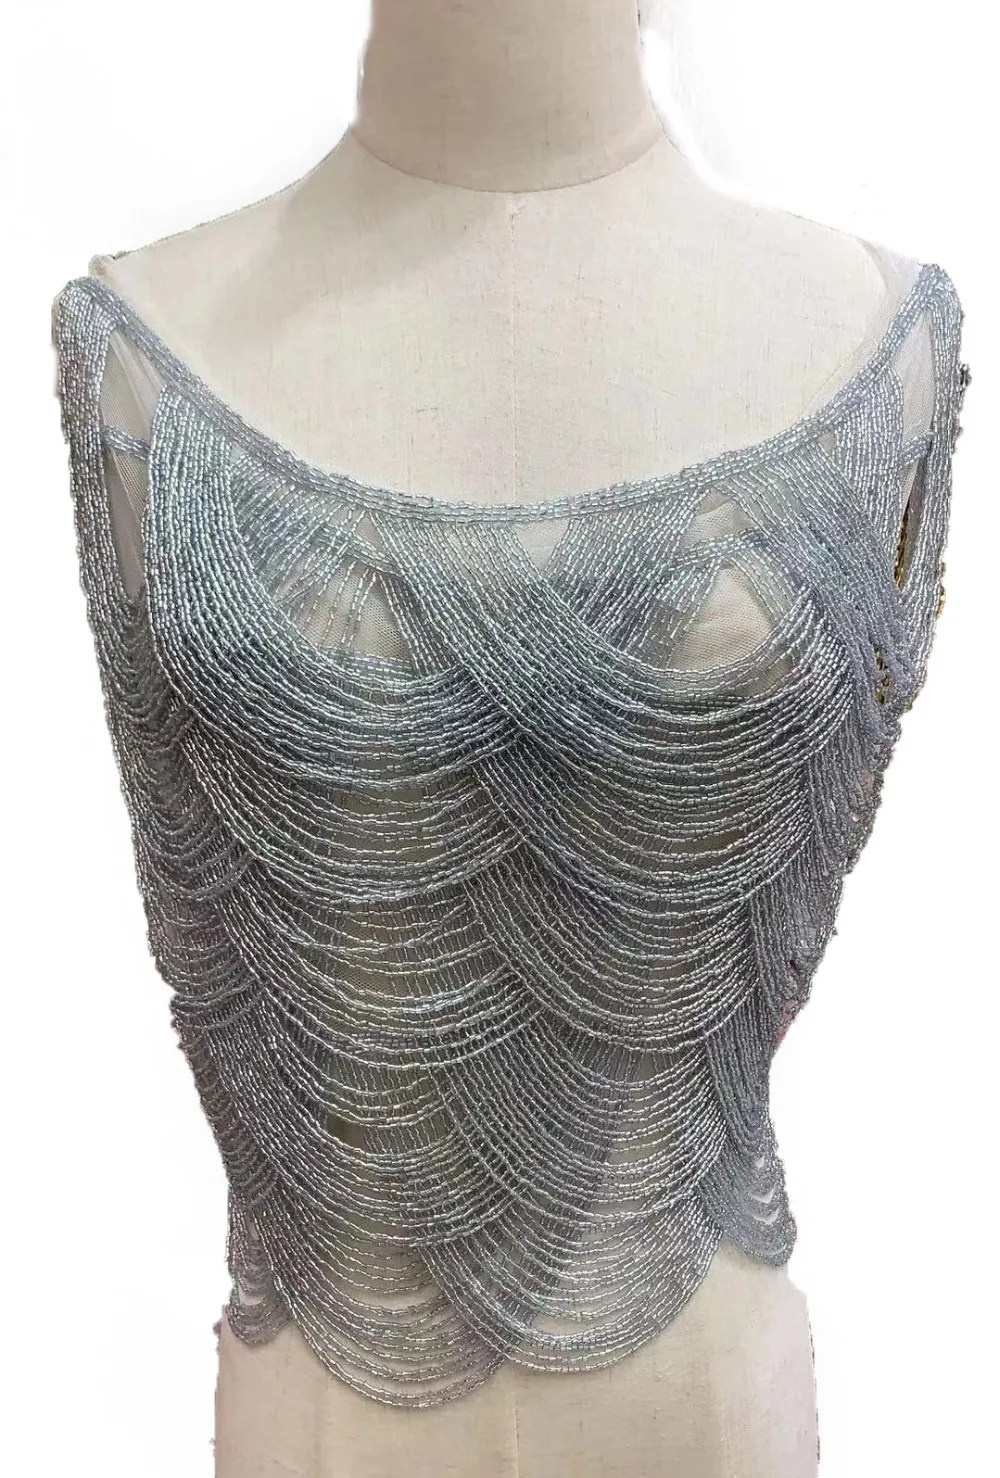 La Belleza параболическая волнистая нашивка, аппликации с бахромой, серебряные бусины, аппликации со стразами, свадебное платье аппликация, золотой бисер патч